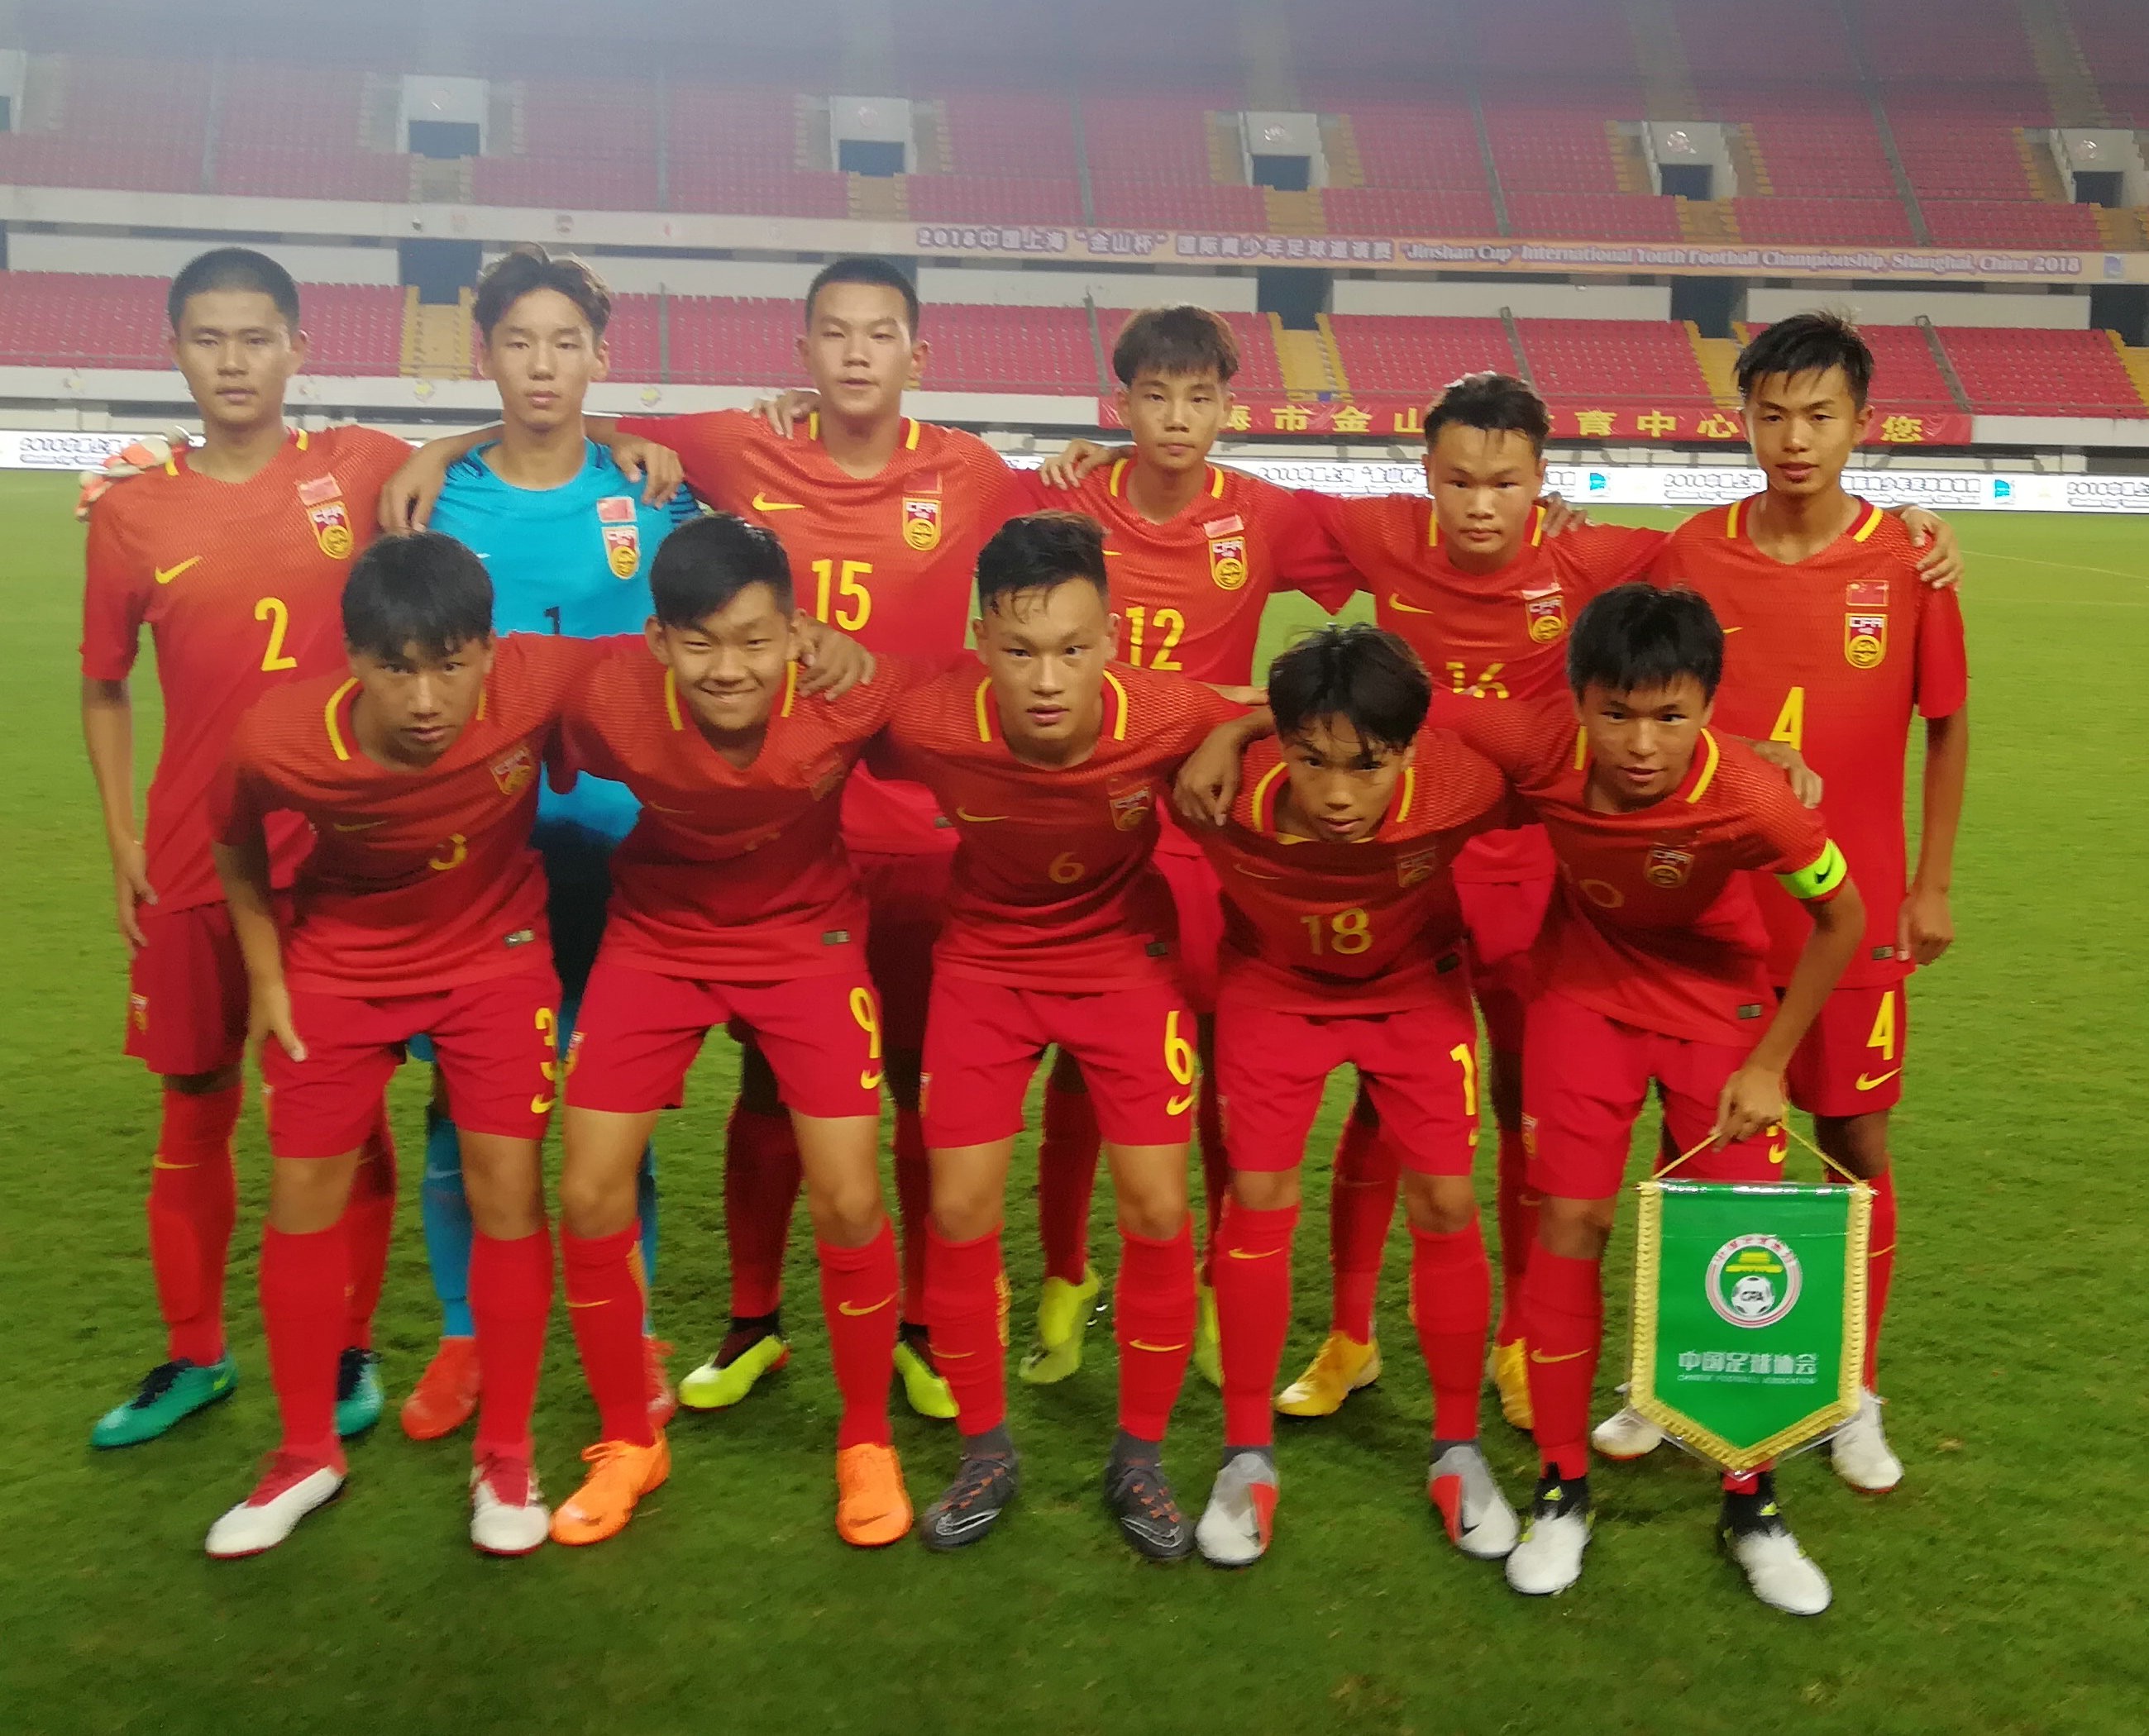 2018国际青少年足球邀请赛开战 中国U15黄队